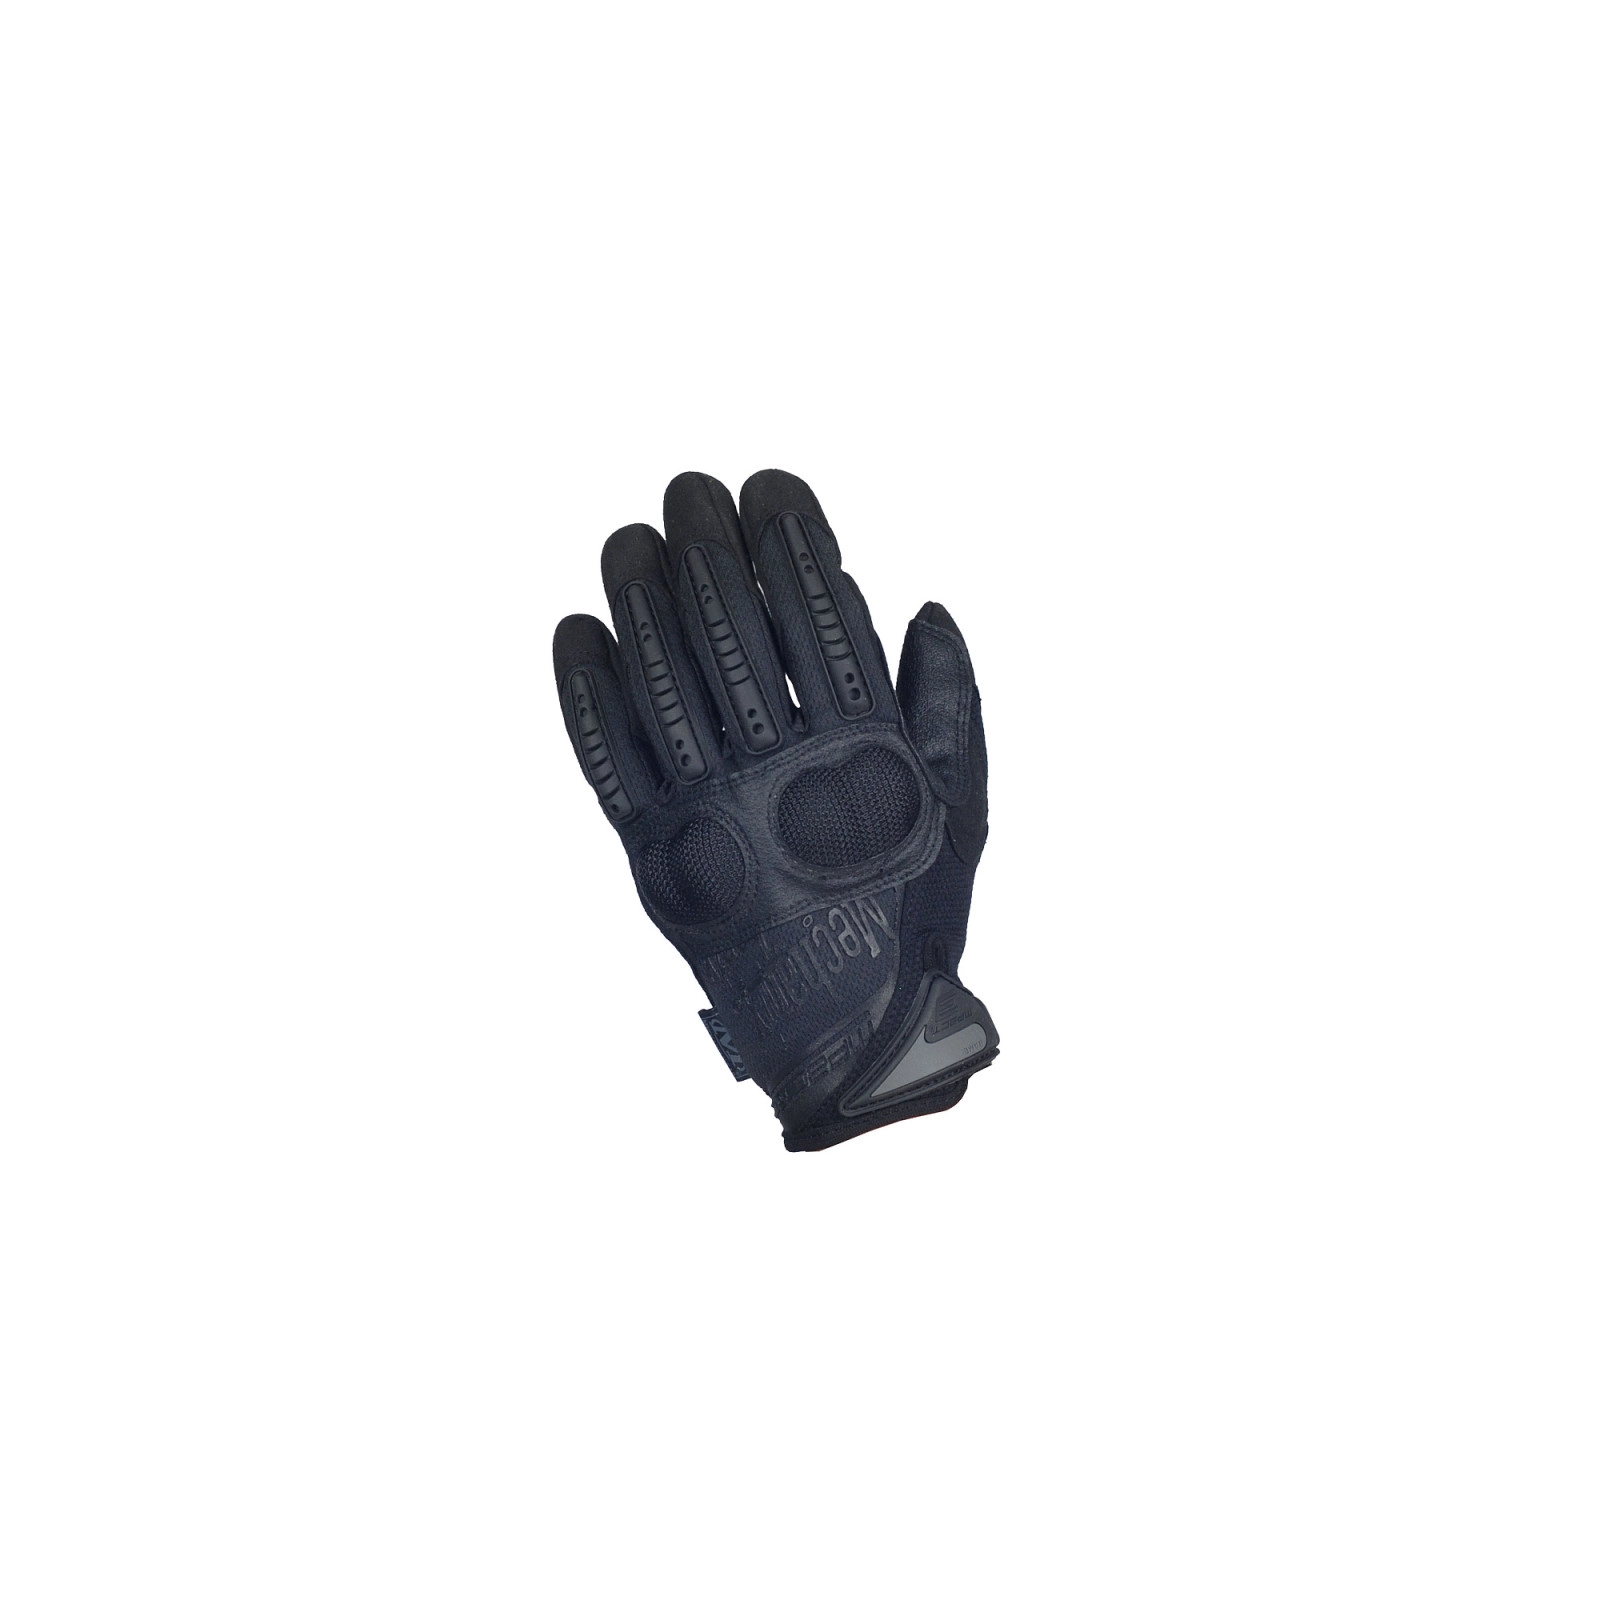 Захисні рукавиці Mechanix M-Pact 3 Covert (LG) (MP3-55-010) зображення 4